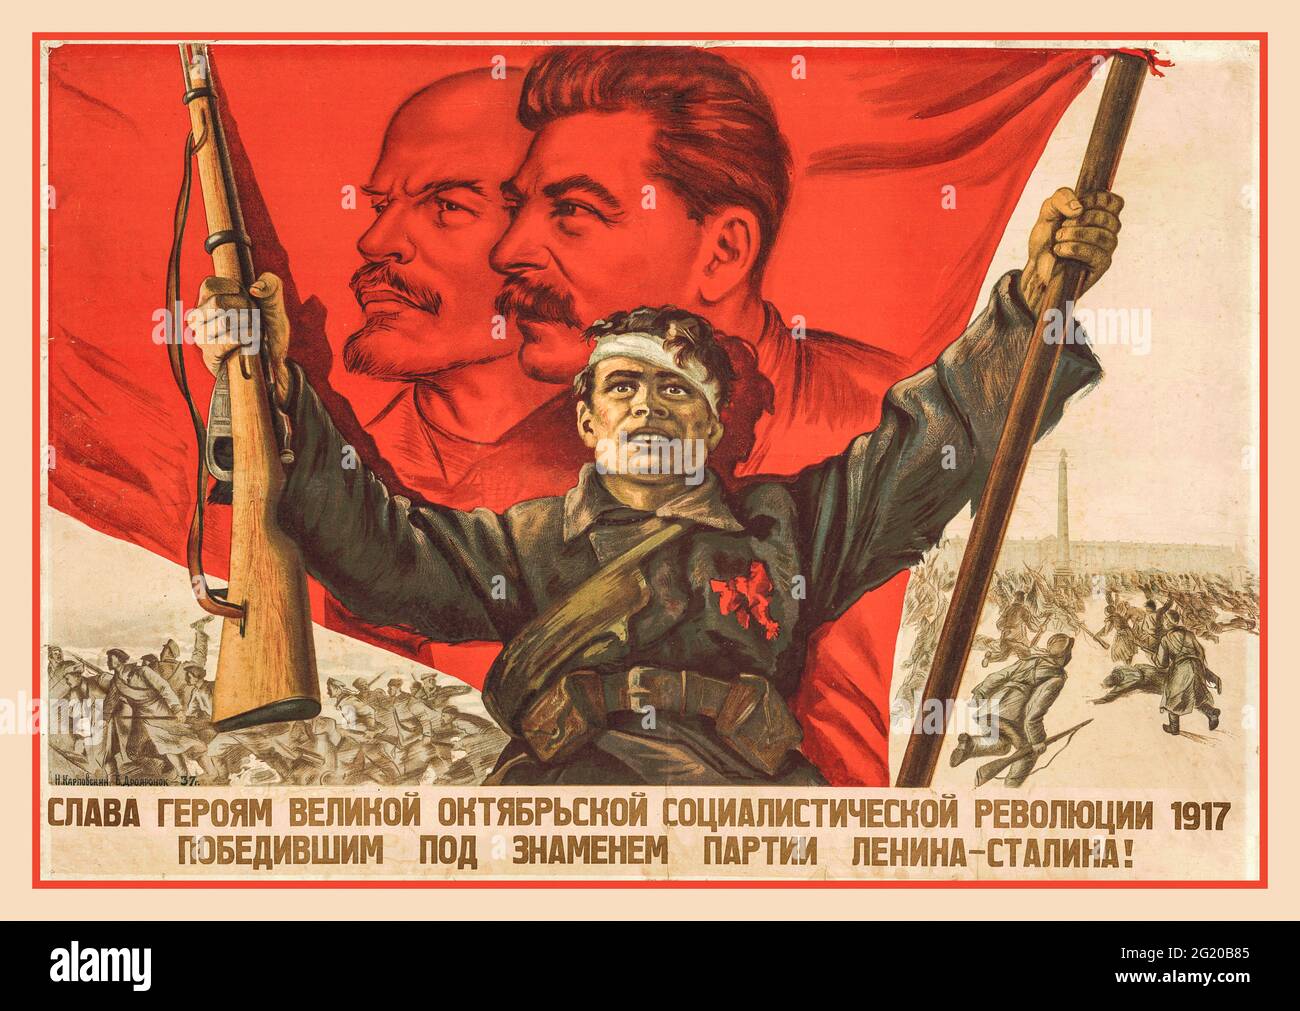 Ruhm den Helden der Großen Sozialistischen Oktoberrevolution von 1917, die unter dem Banner der Partei Lenins und Stalins gewonnen haben! Haube. N. Karpovsky. OGIZ-IZOGIZ. M.-L., 1937 Stockfoto